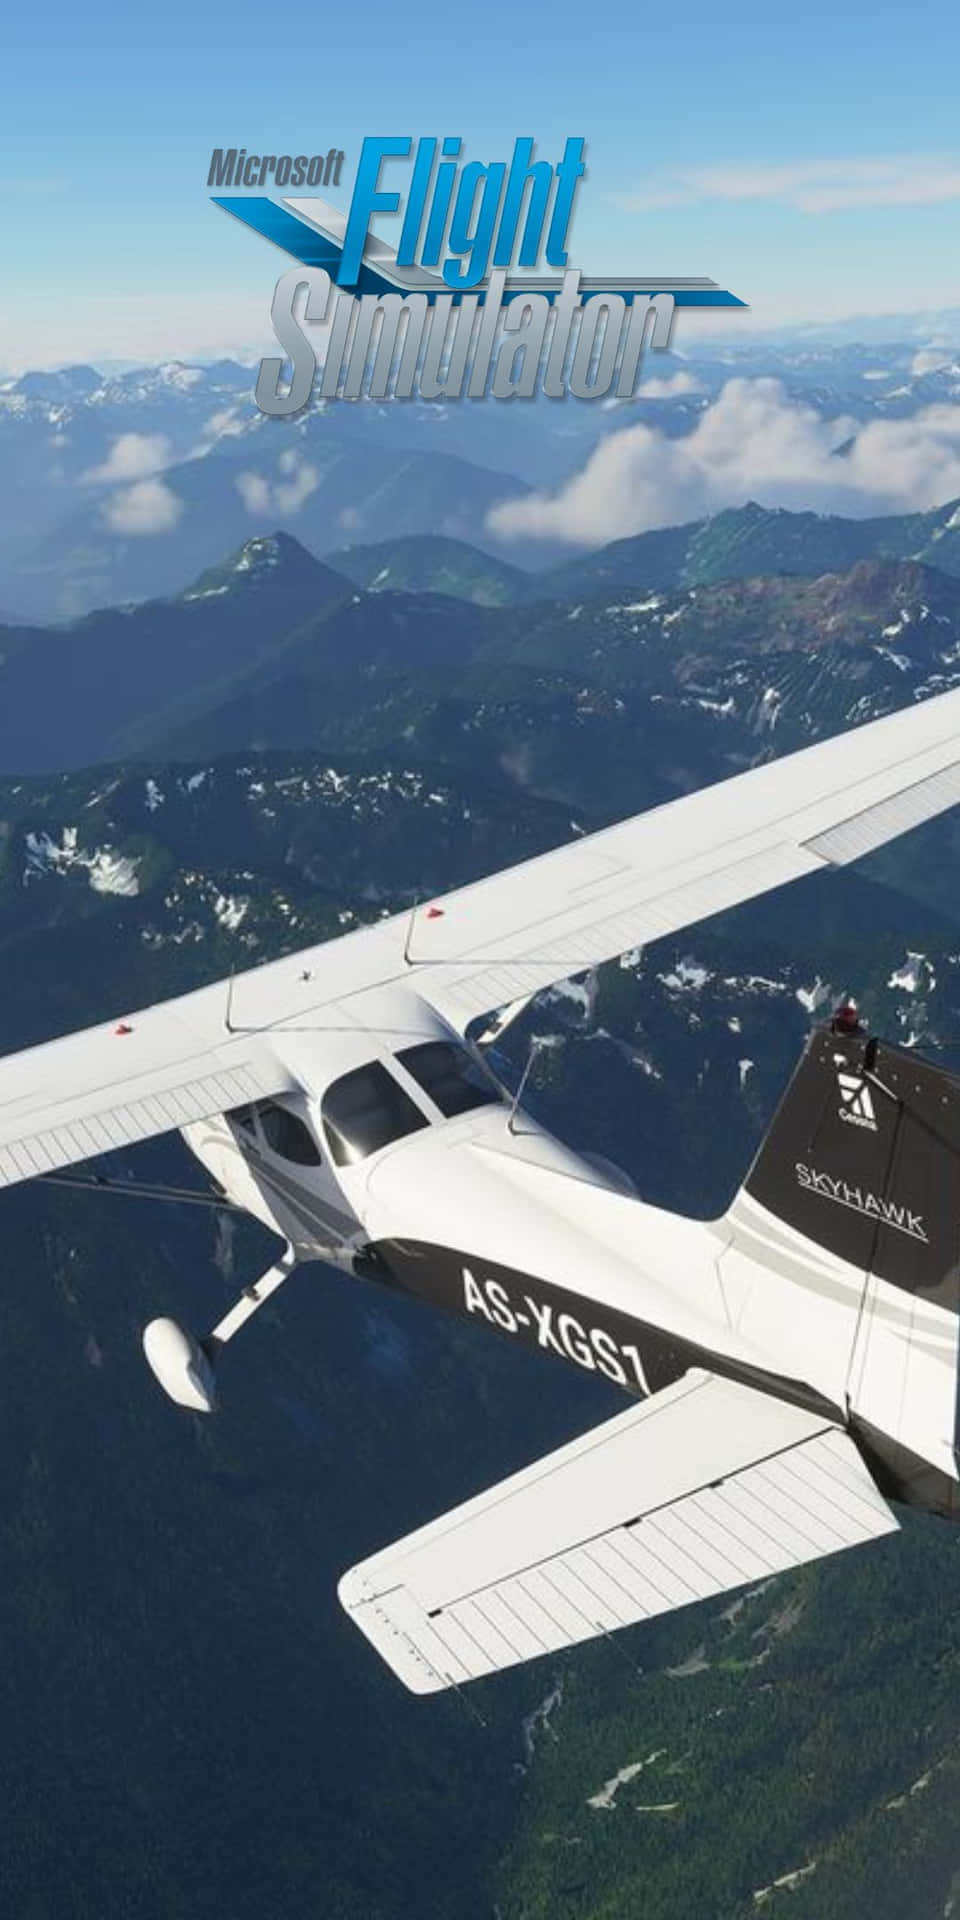 Plano De Fundo Do Microsoft Flight Simulator Do Pixel 3 1080 X 2160